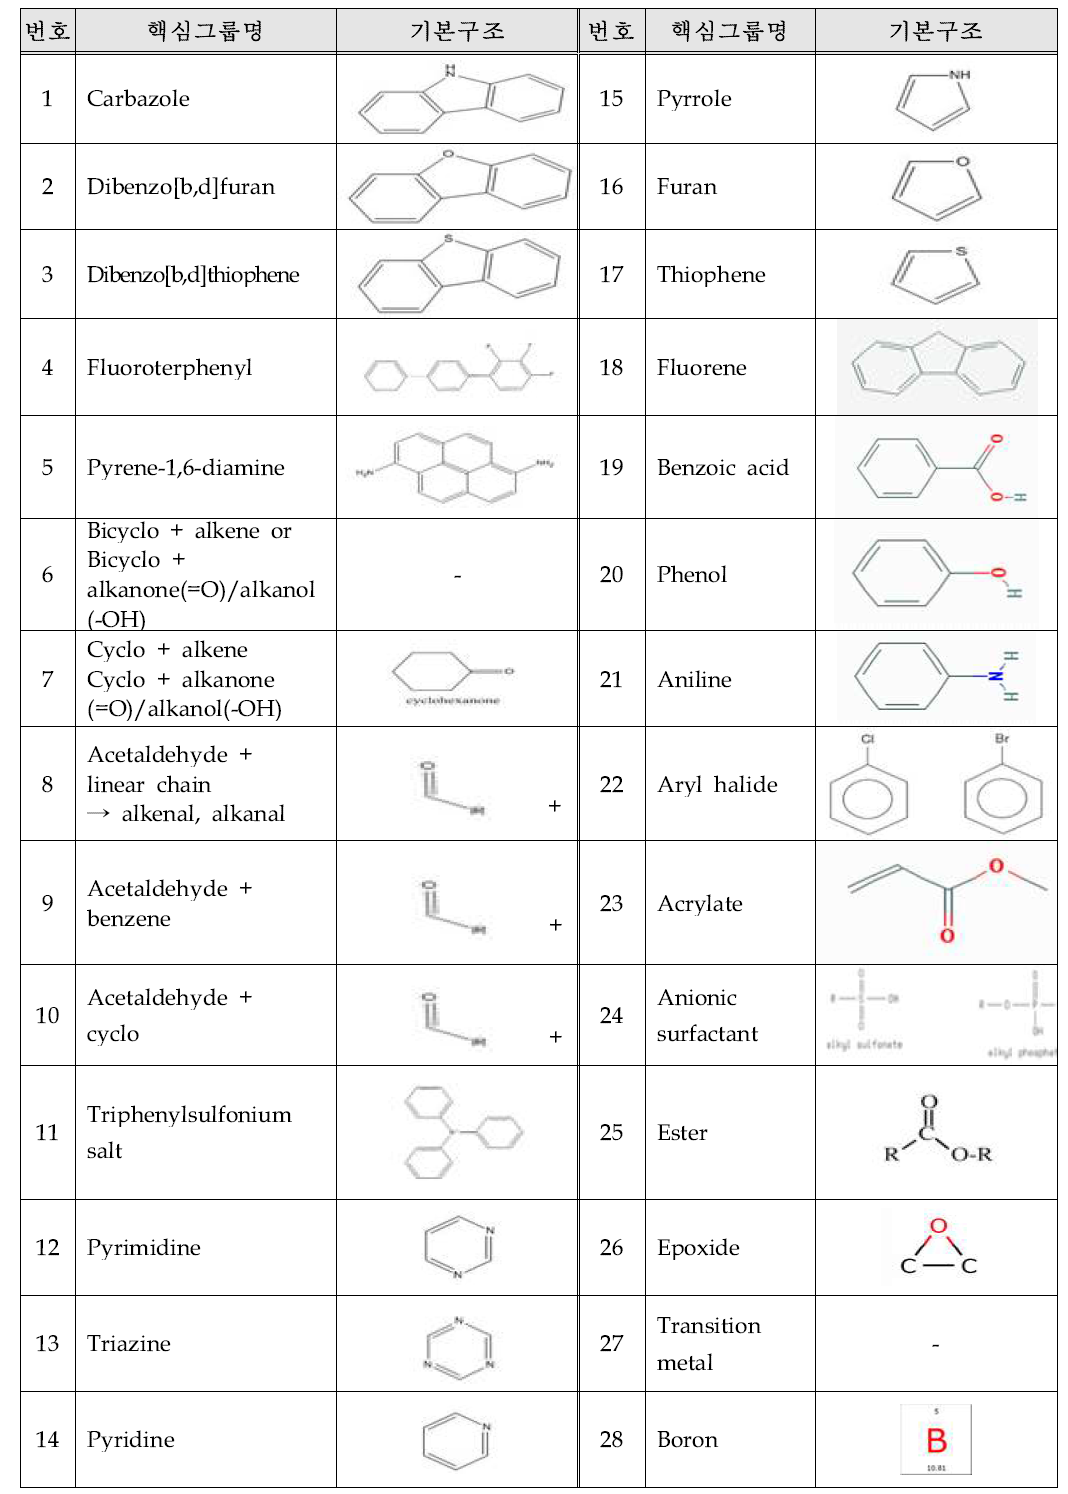 핵심그룹(28종)에 대한 명칭 및 기본 구조